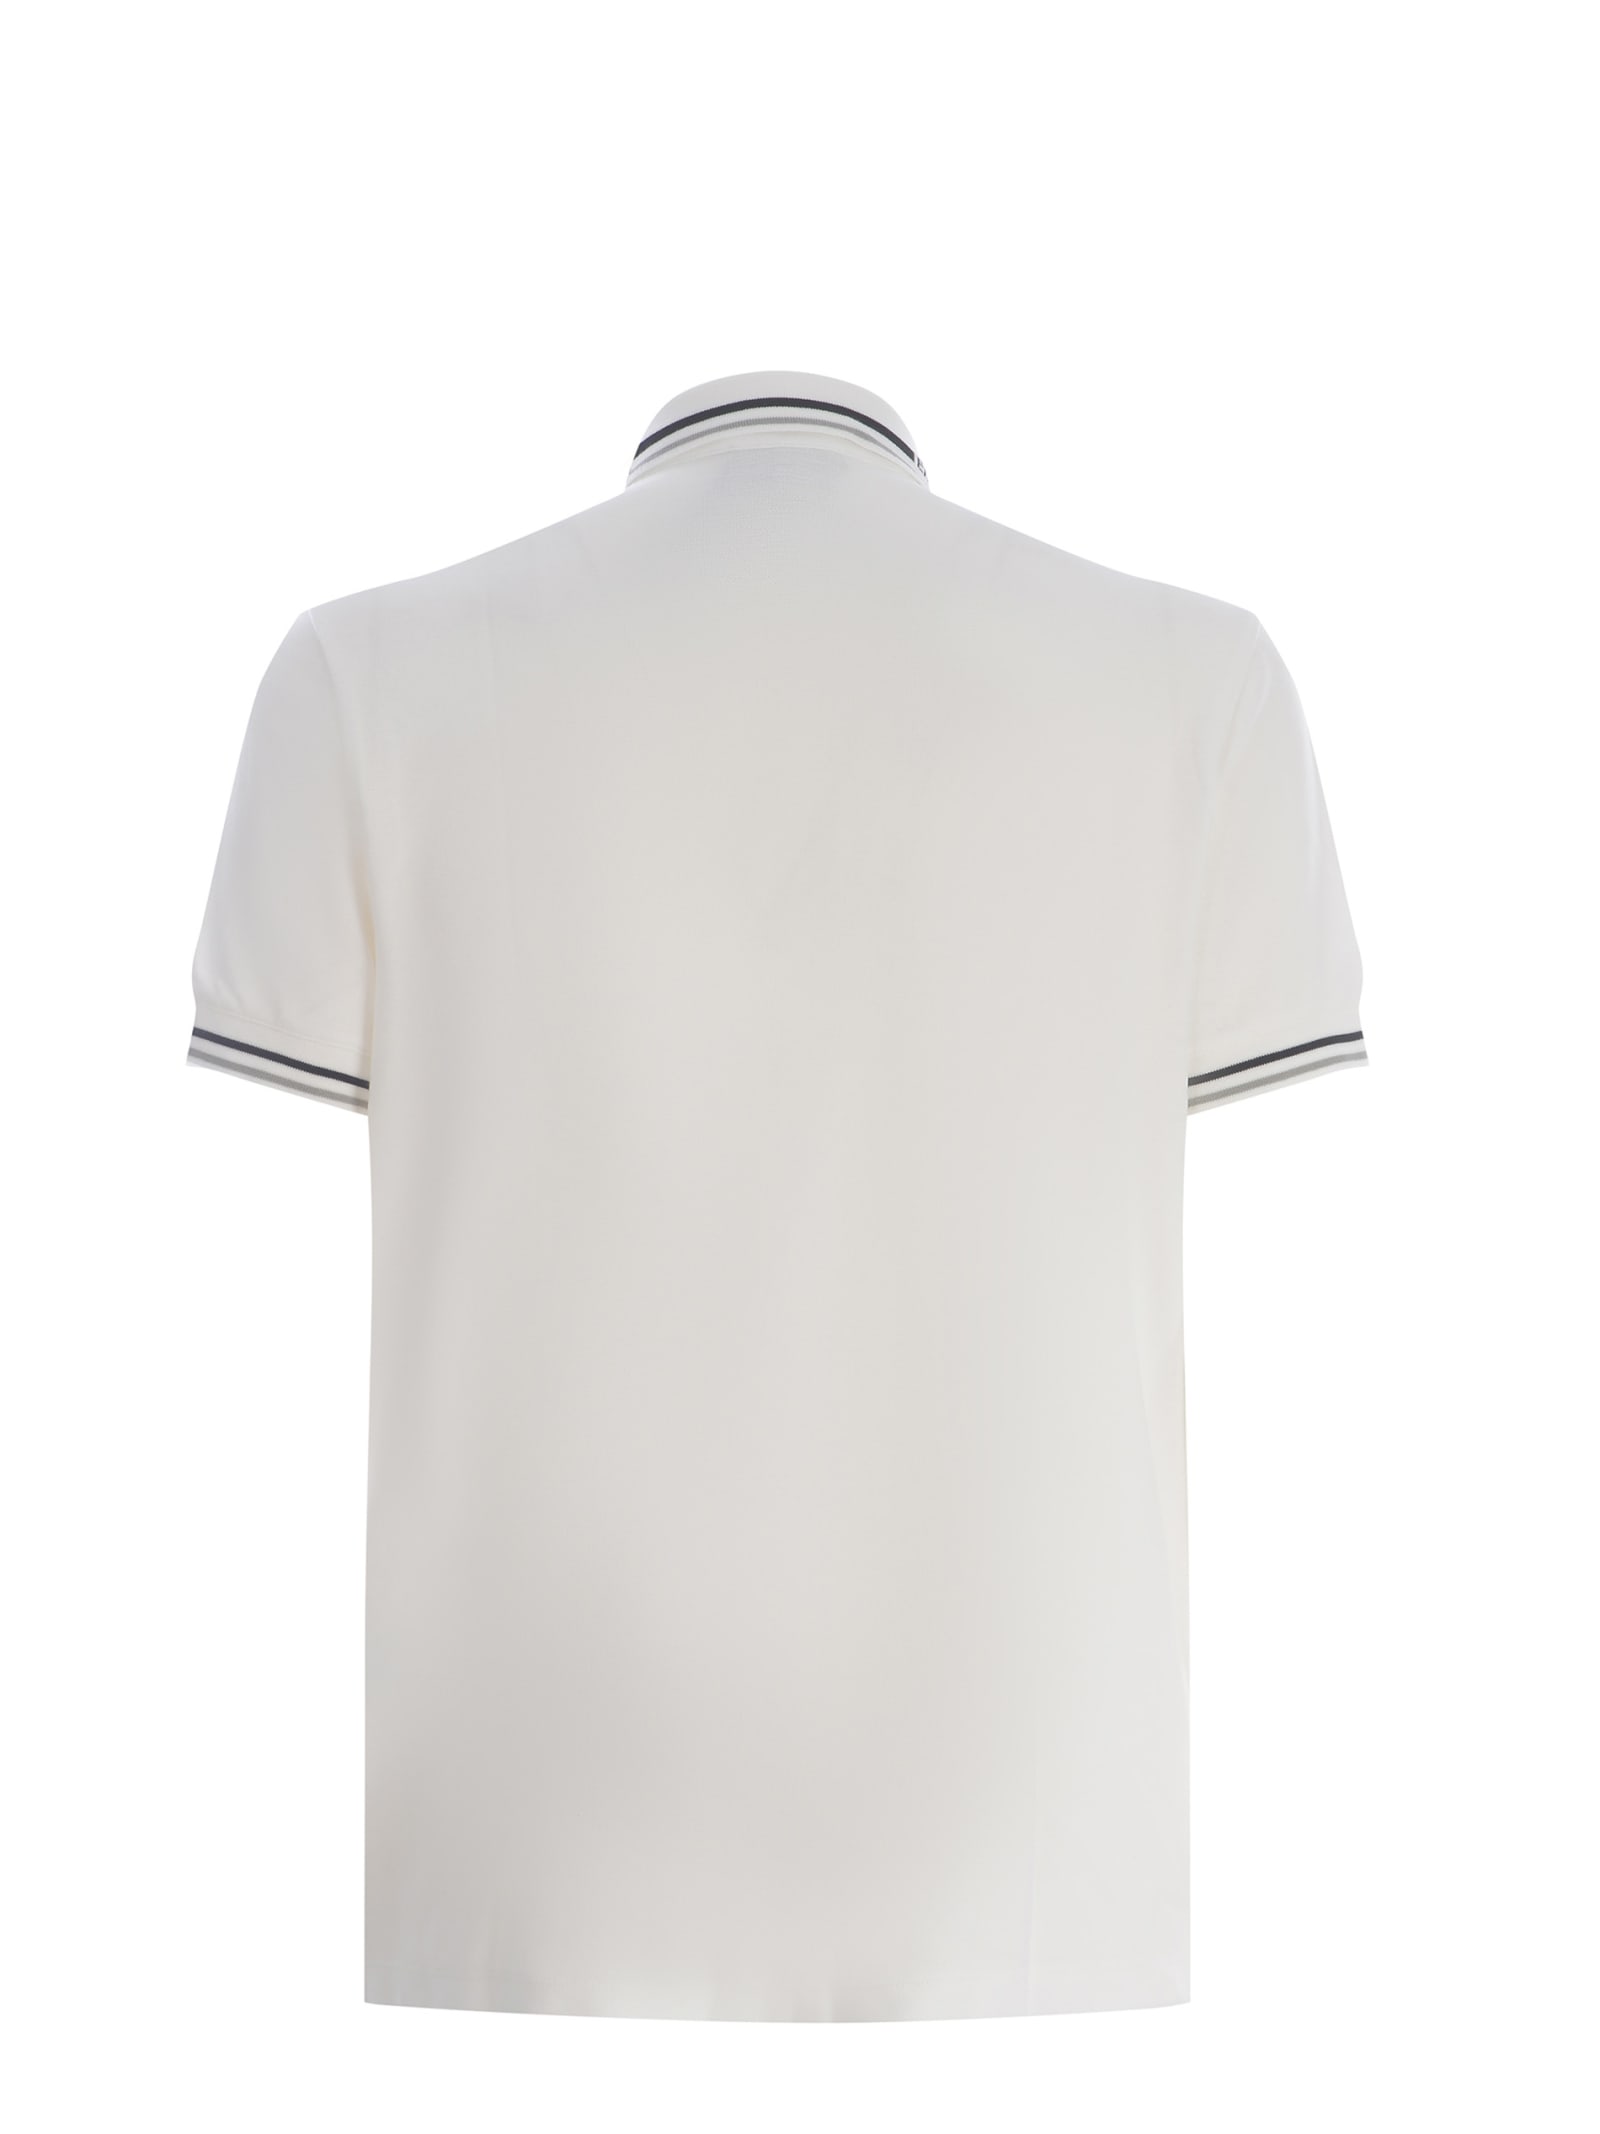 Shop Emporio Armani Polo Shirt  Made Of Cotton Pique In Bianco